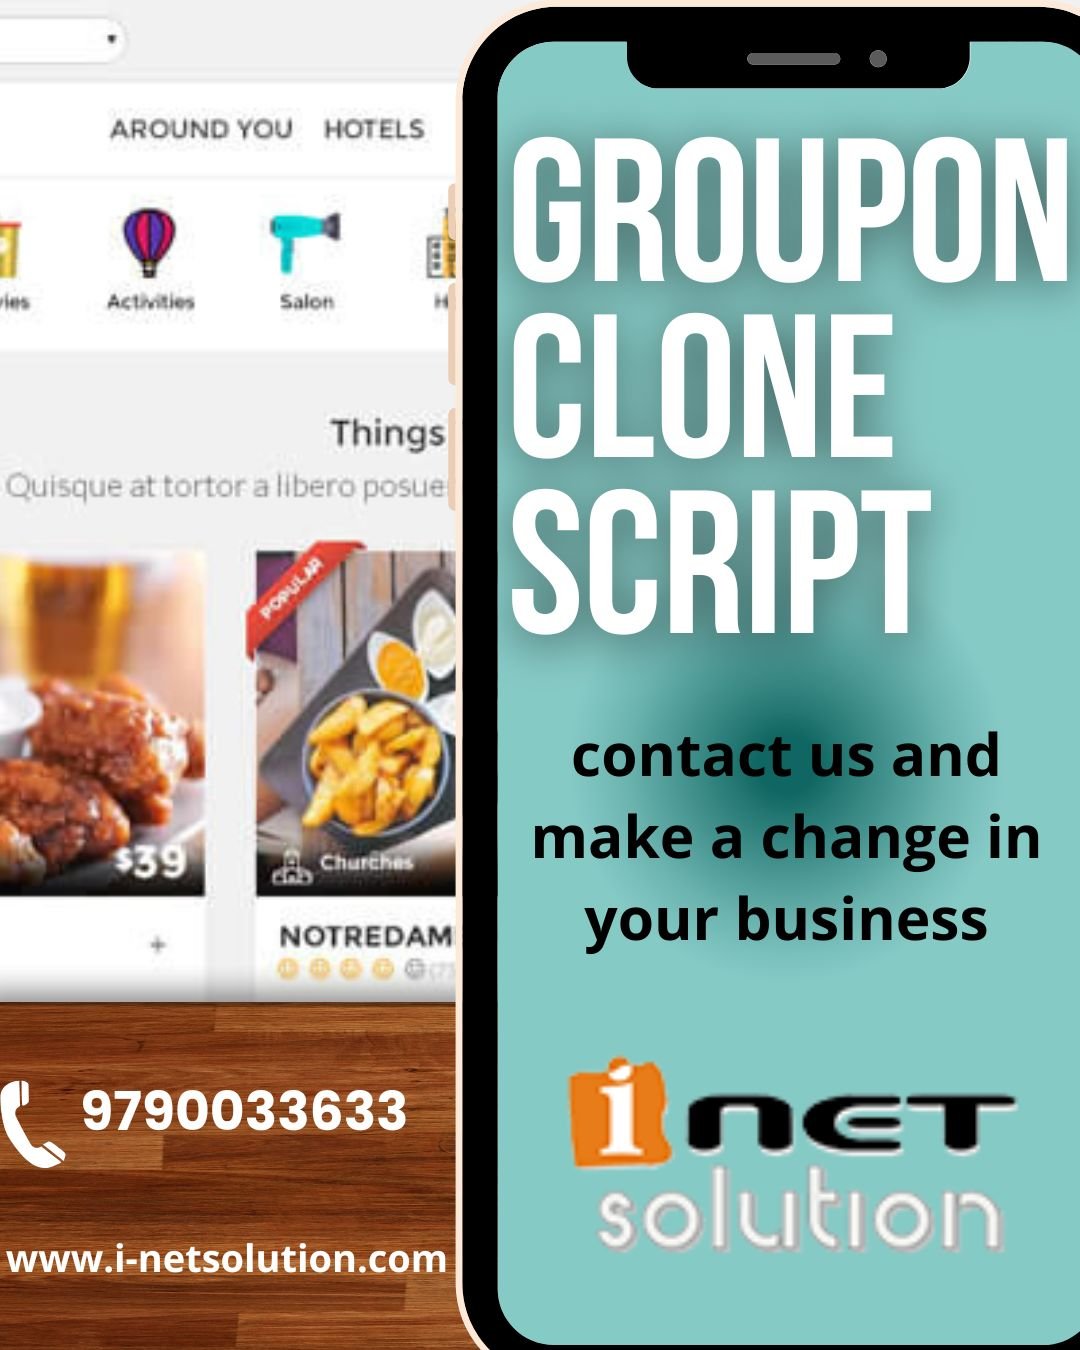 Mydala Clone/ Groupon Clone/ 1 sale Clone Script/Daily Deals Script